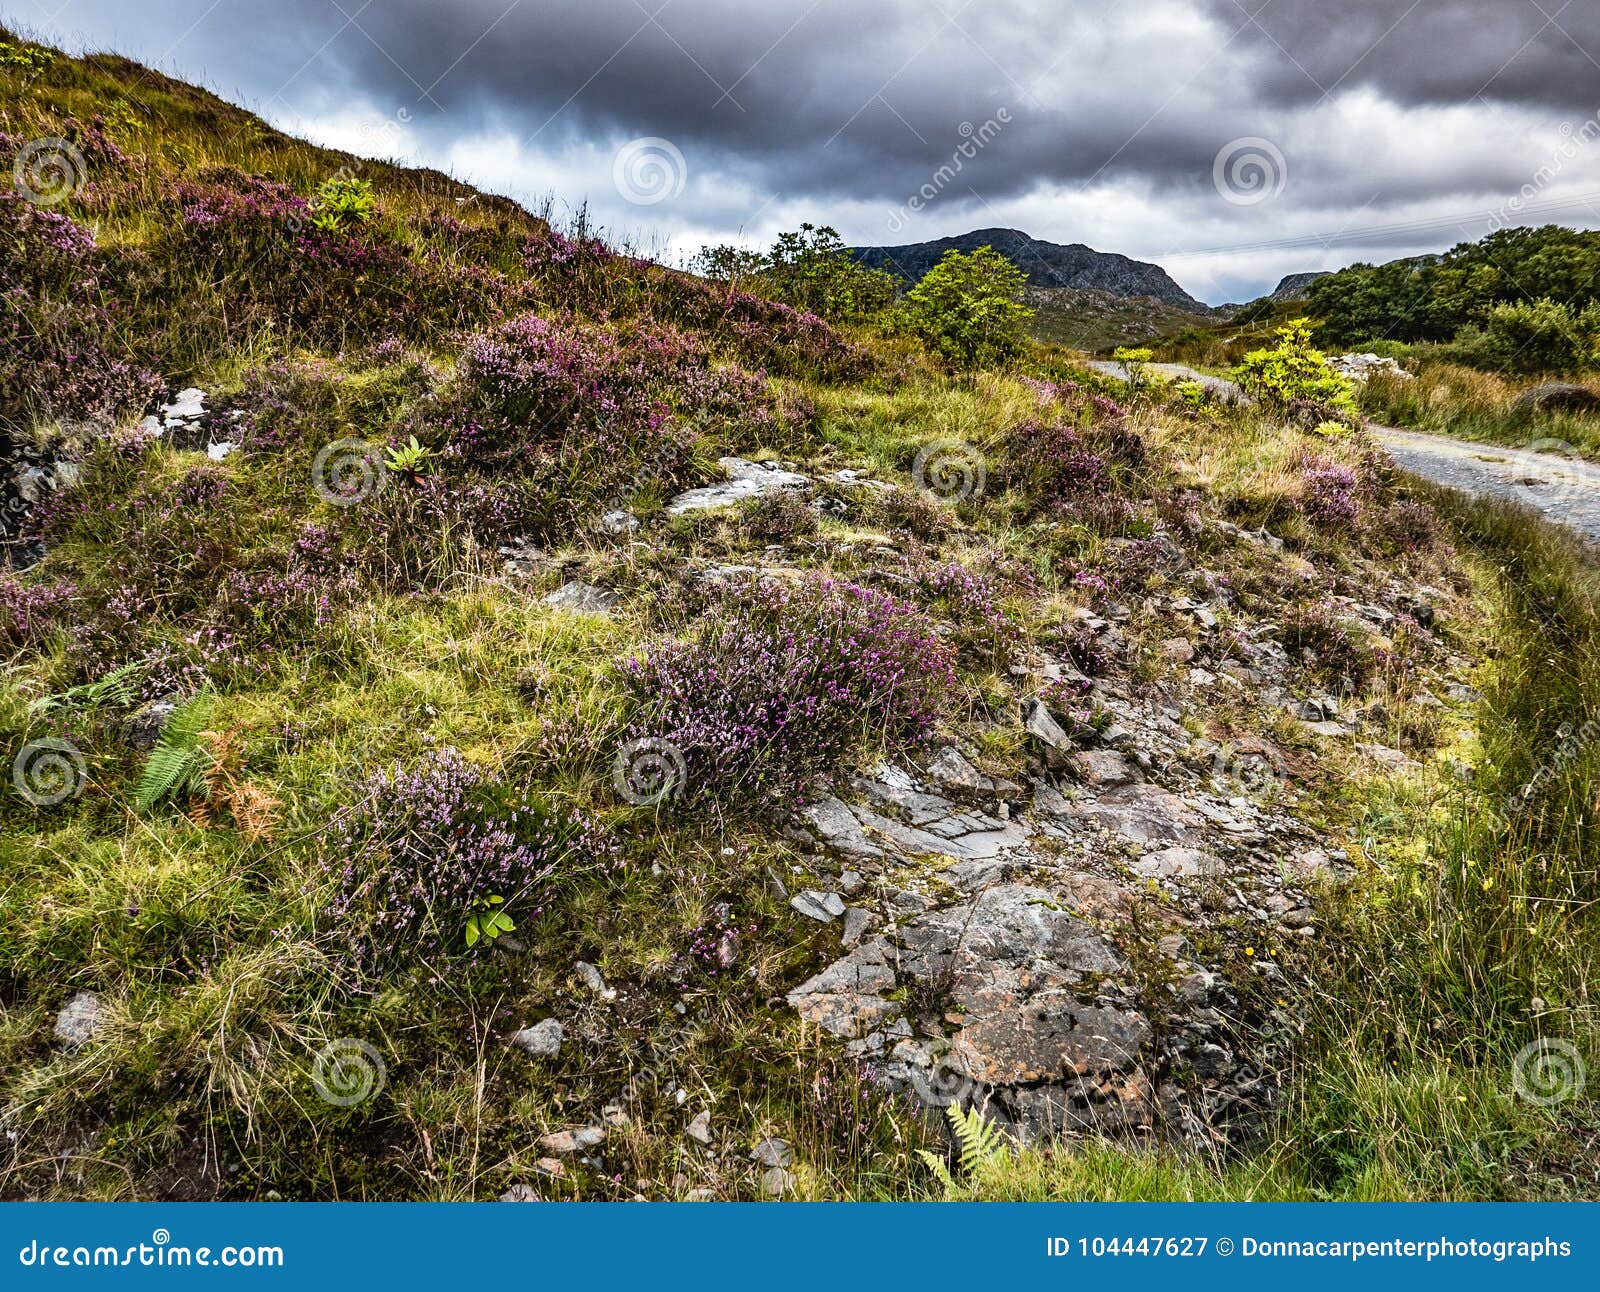 walking path through heathered hillsides in scottish highlands